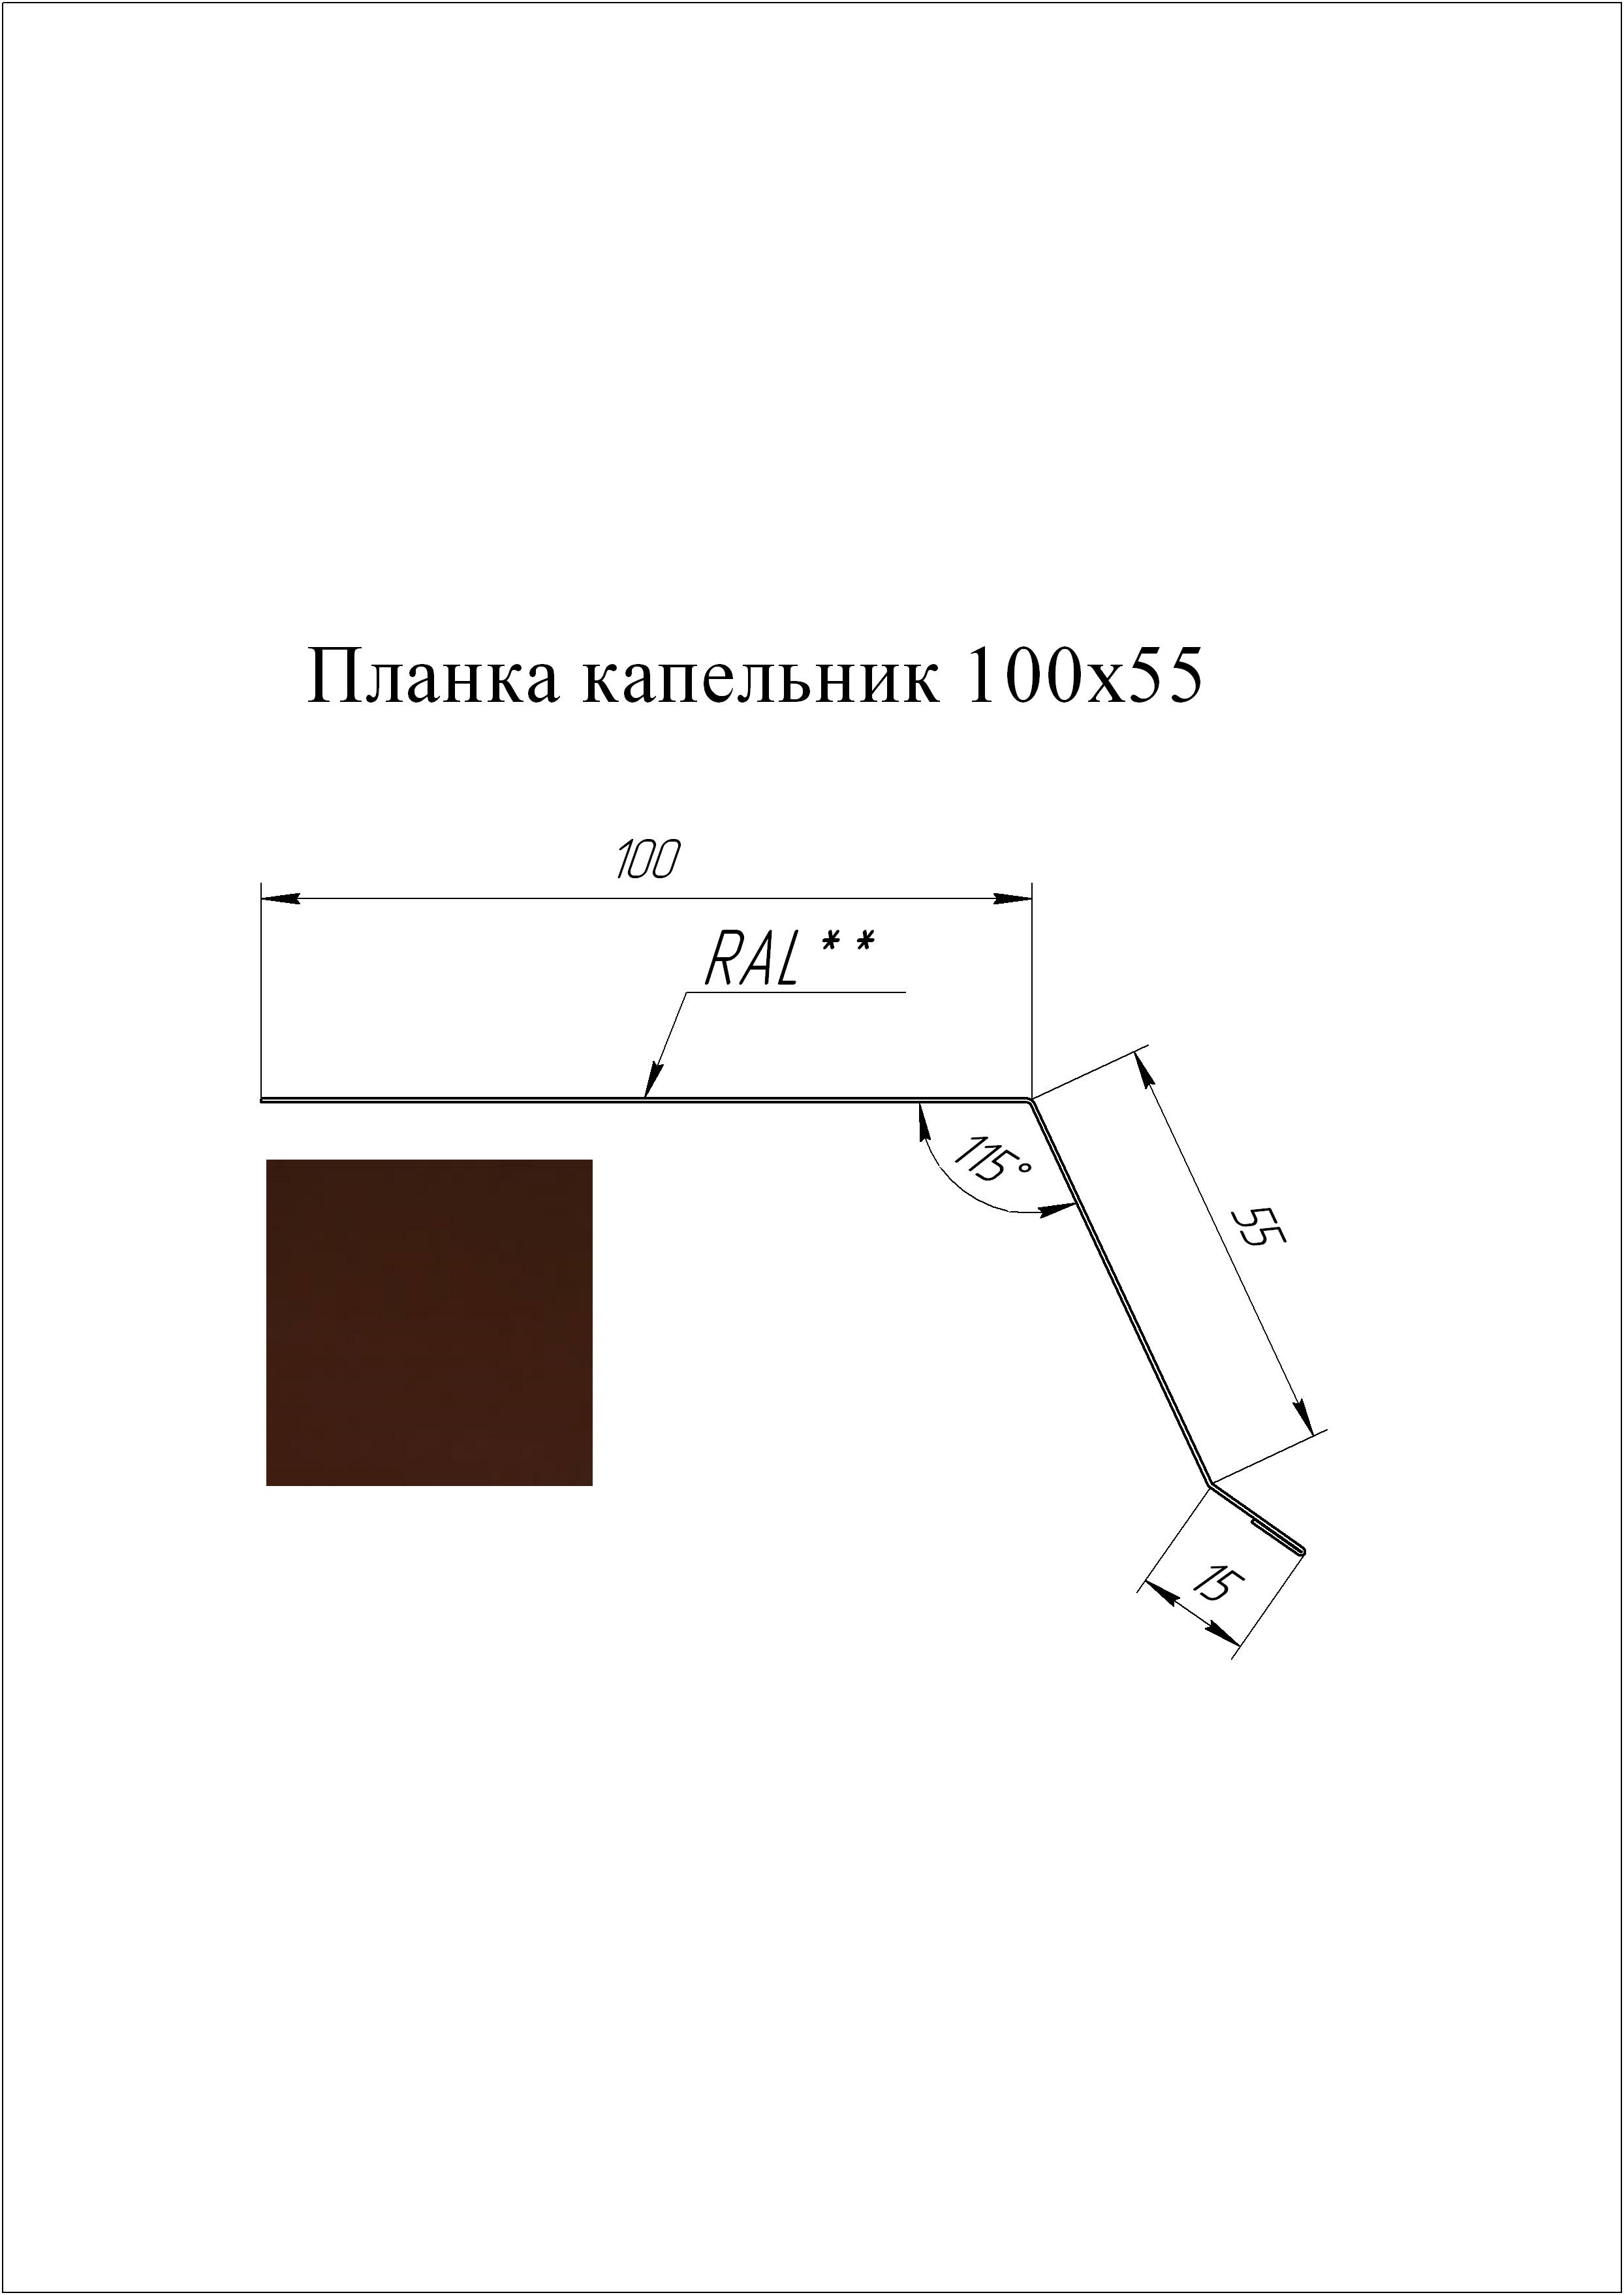 Планка капельник 100*55 мм L=2 м GL PE-полиэстер 0,45 RAL 8017 - коричневый шоколад